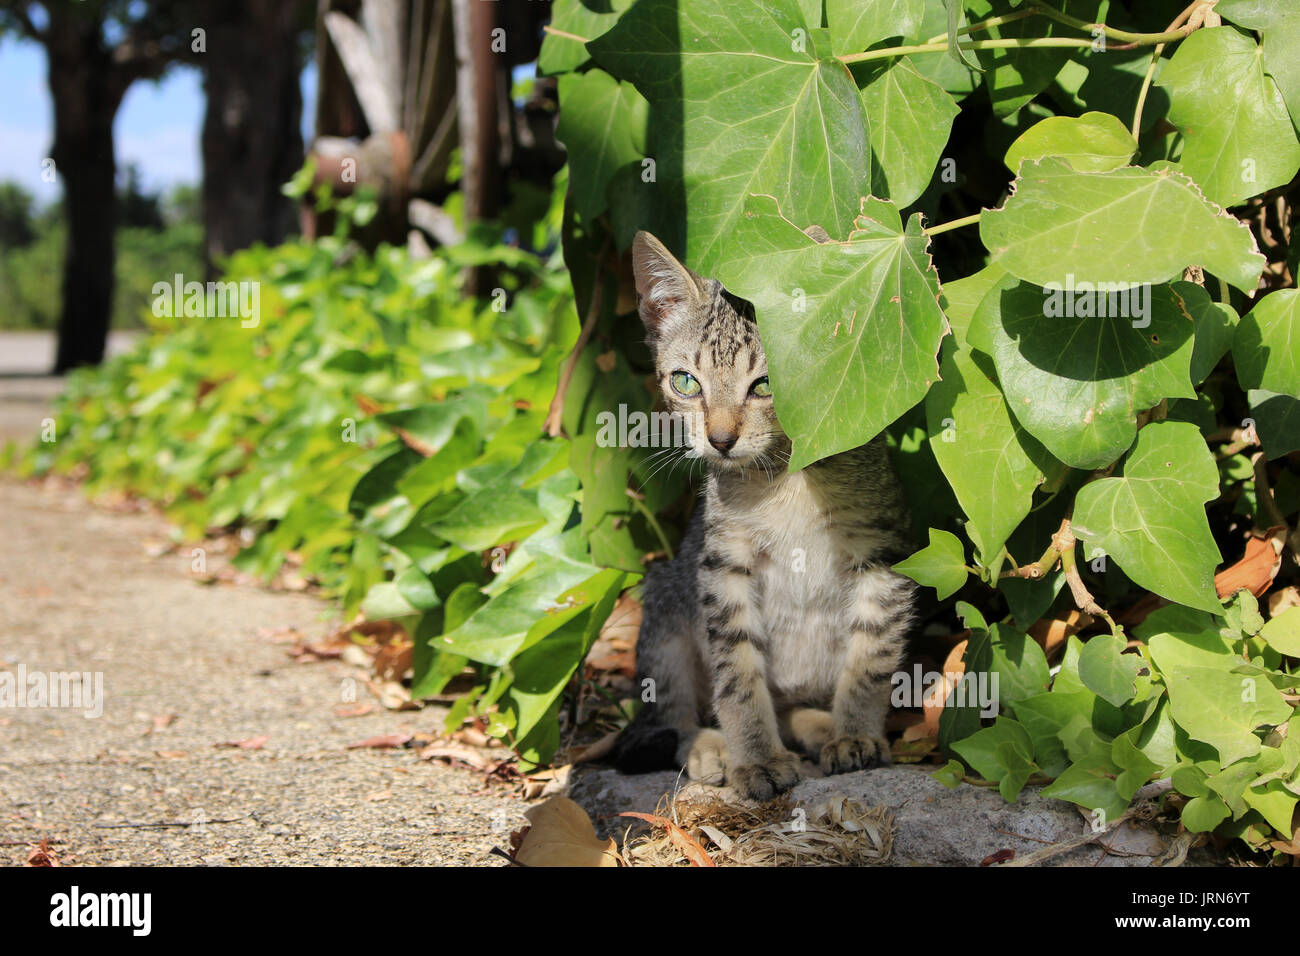 kitten, 7 weeks old, looking between ivy leaves Stock Photo